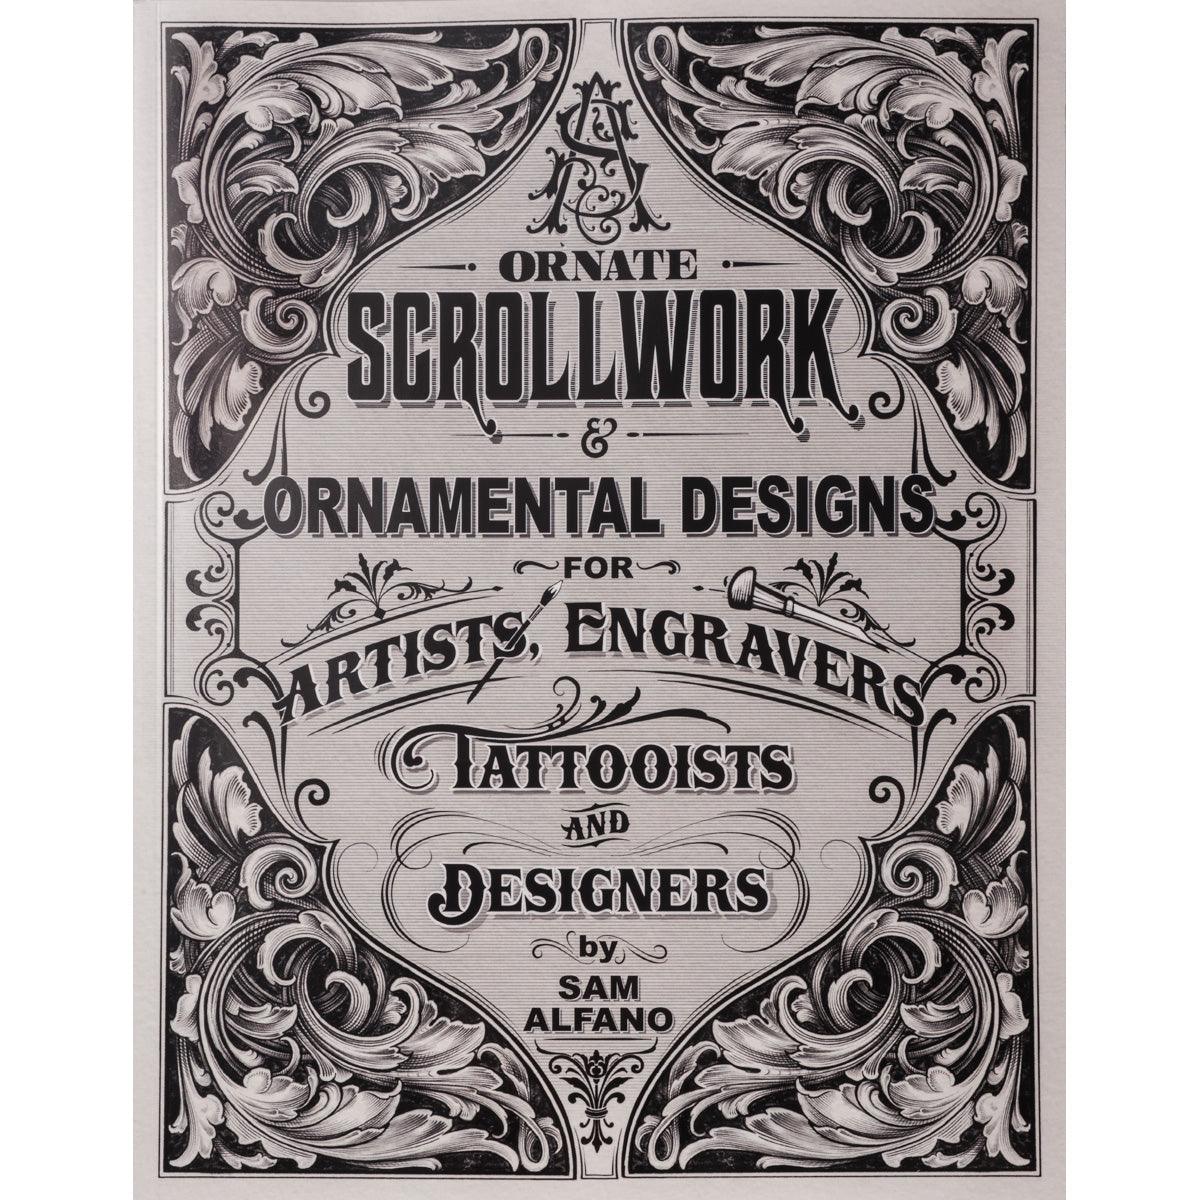 Sam Alfano, engraver - Master Hand Engraver